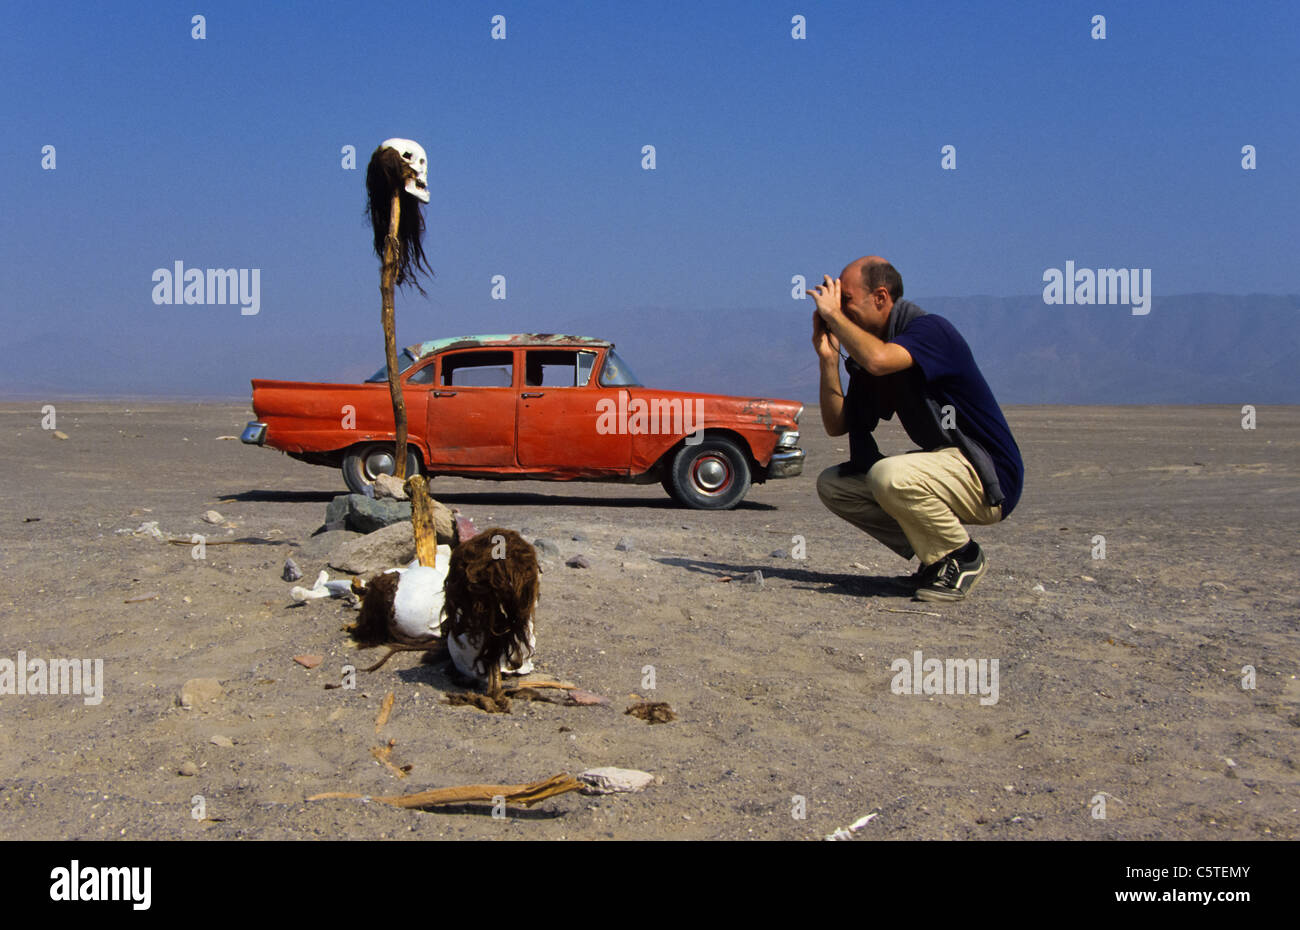 Fotografare turistico inka mummie al di fuori del vecchio reed vettura americana Foto Stock